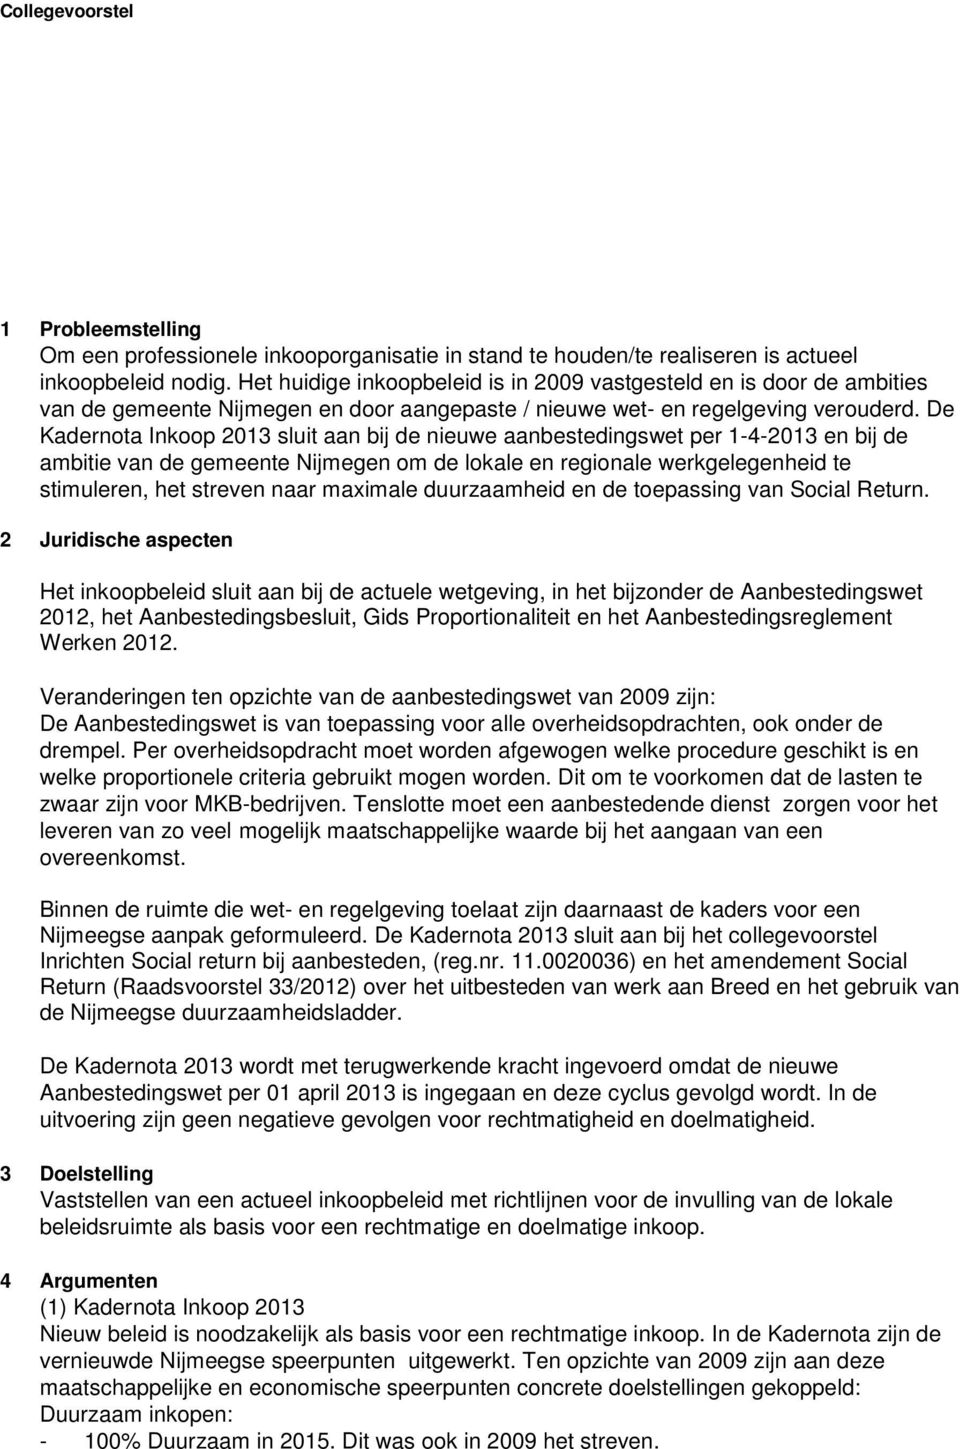 De Kadernota Inkoop 2013 sluit aan bij de nieuwe aanbestedingswet per 1-4-2013 en bij de ambitie van de gemeente Nijmegen om de lokale en regionale werkgelegenheid te stimuleren, het streven naar